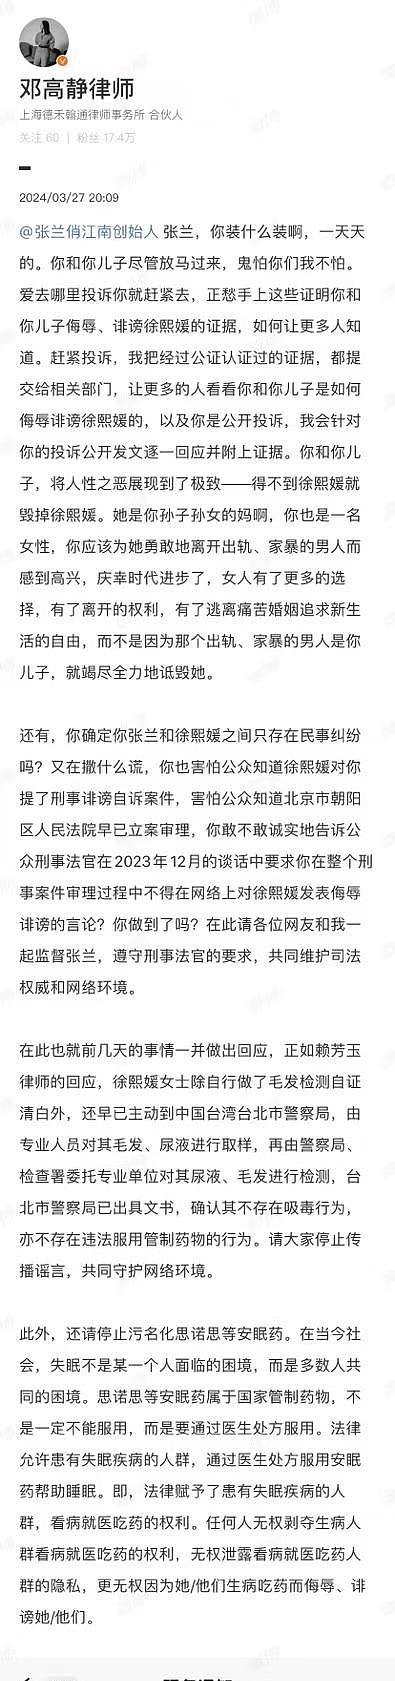 大S律师回应被张兰投诉，提醒张兰掌握诽谤证据 - 3